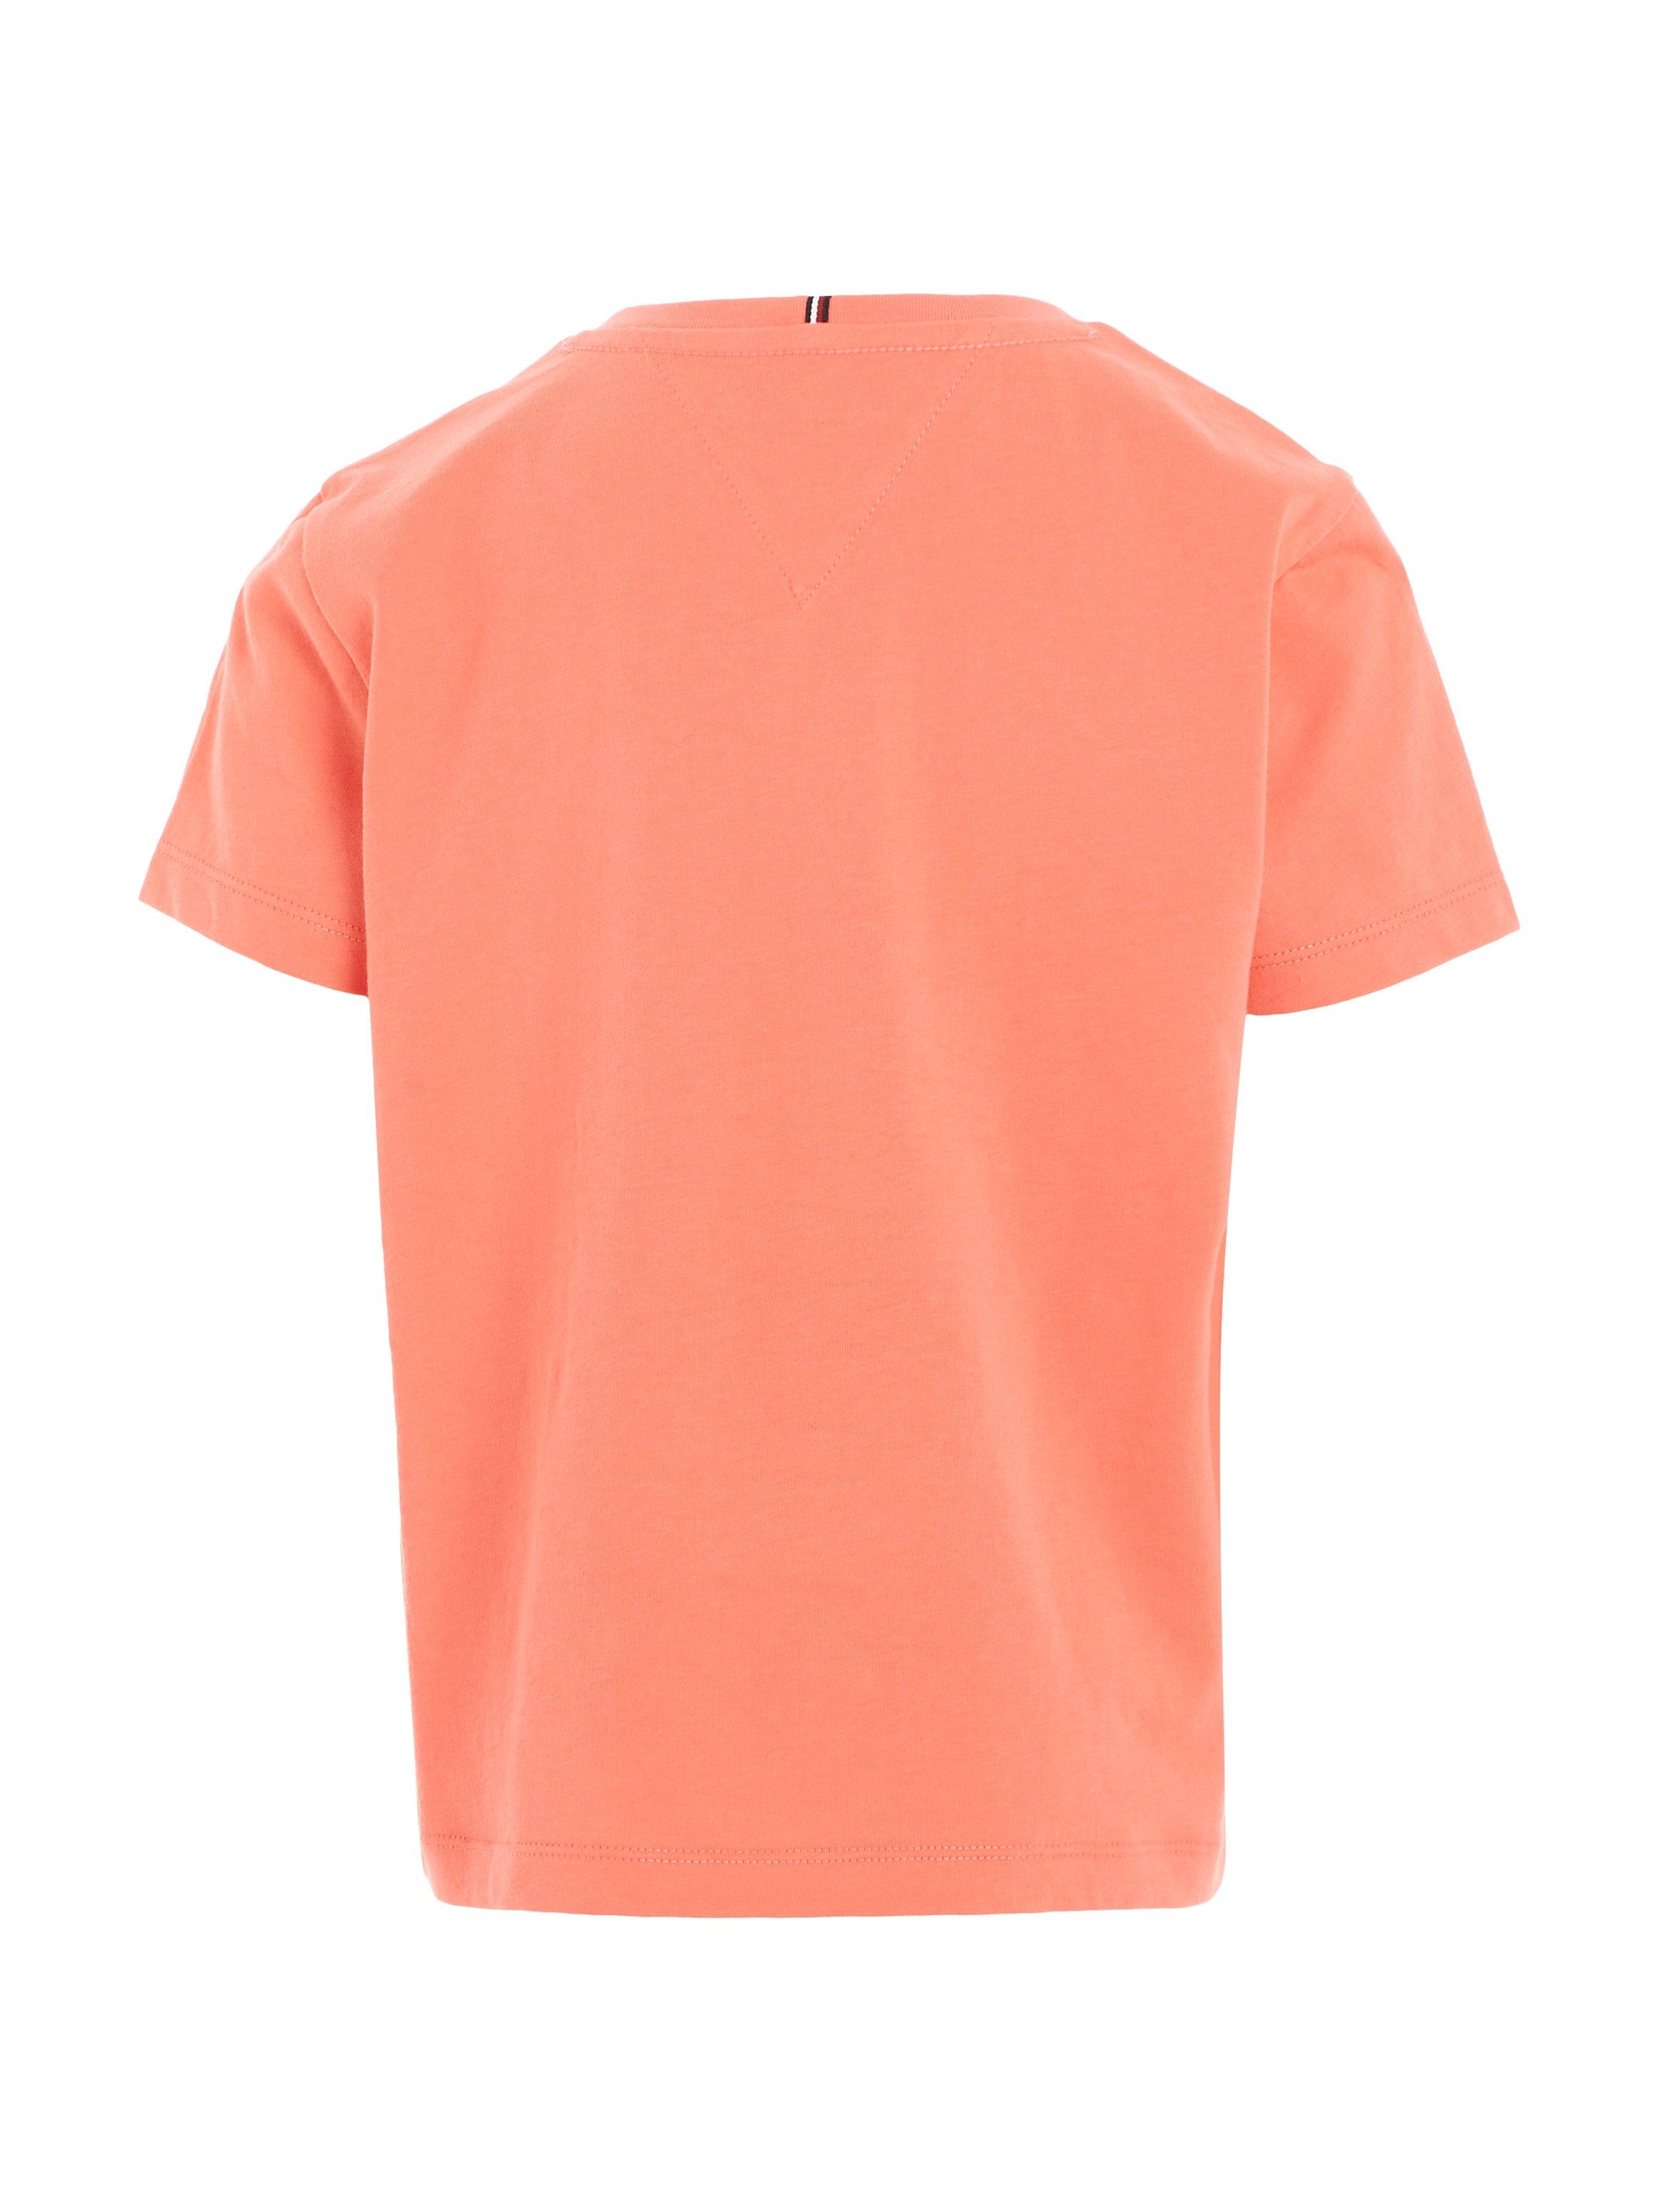 T-Shirt TEE koralle auf modischem mit Hilfiger-Logoschriftzug MONOTYPE S/S Hilfiger Brust Tommy der